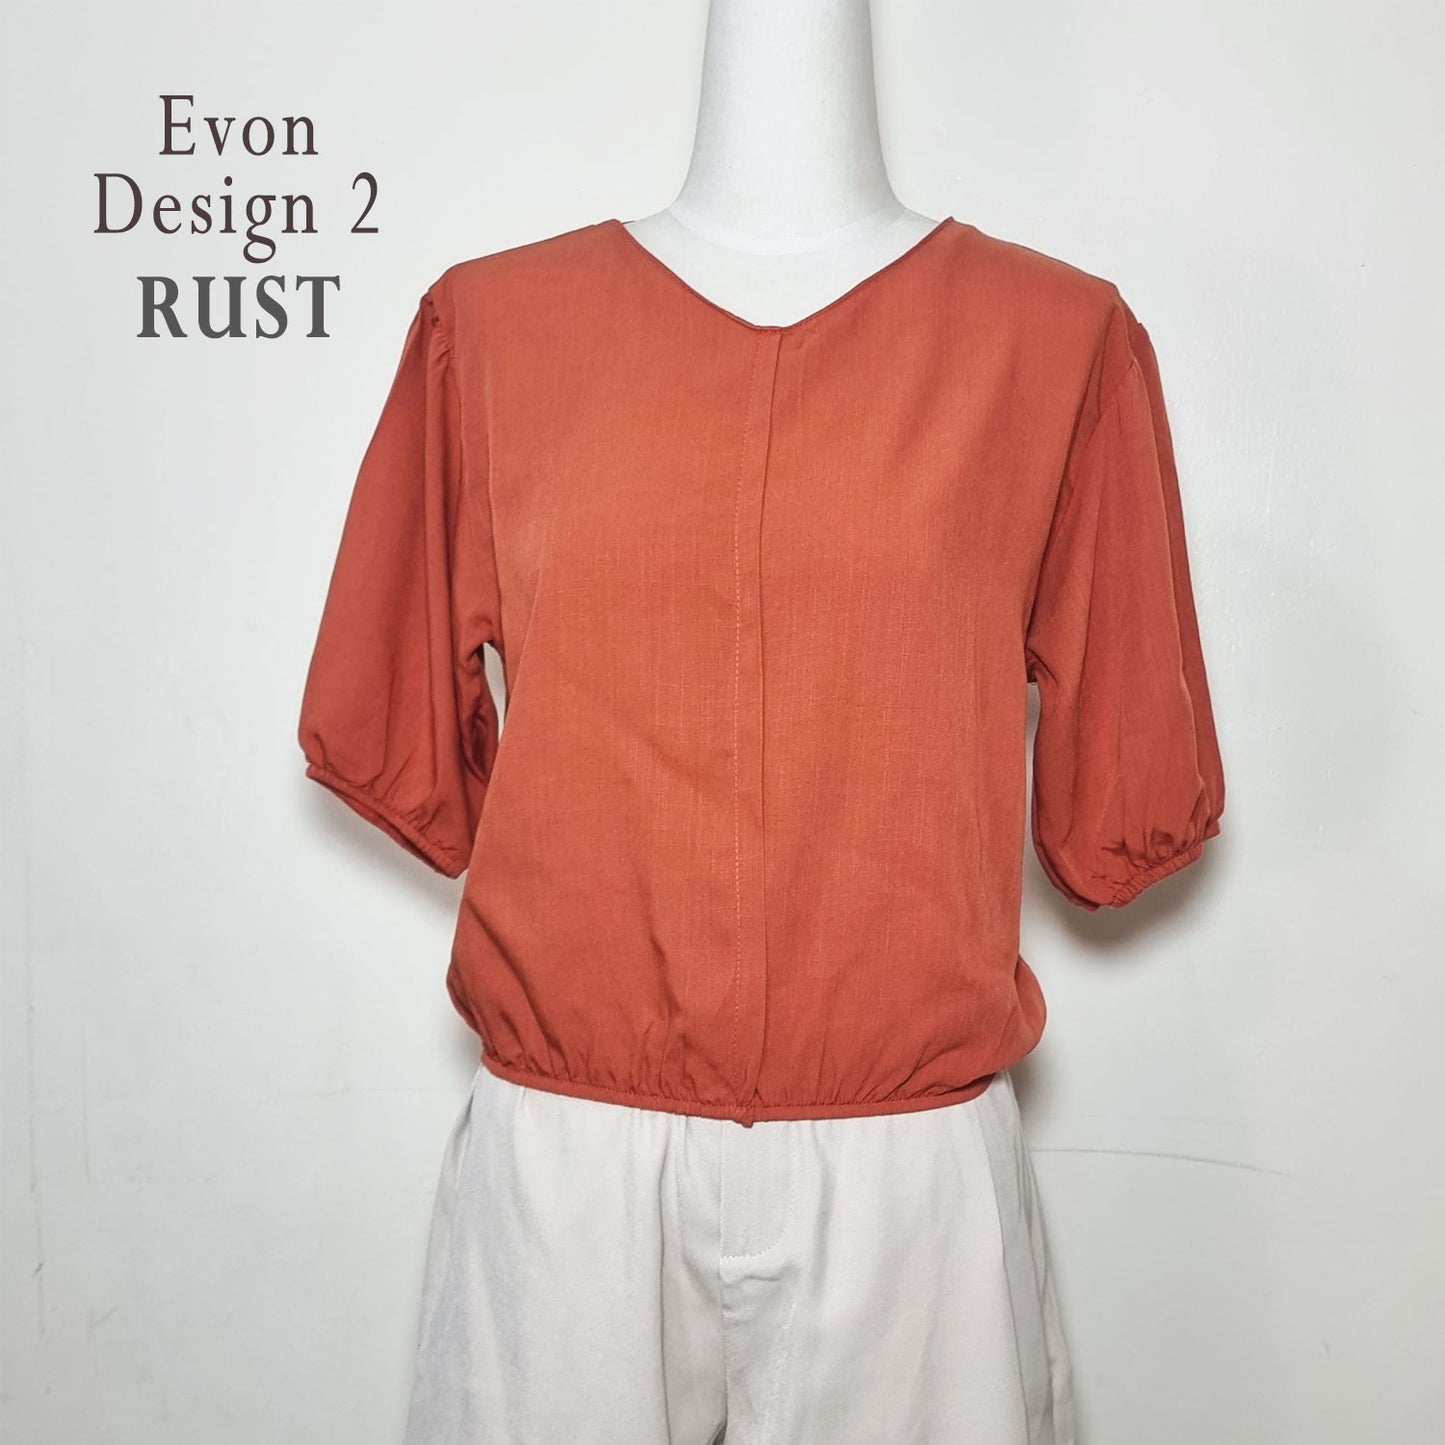 Evon Design 2 - Top 3/4 Sleeves Blouse- Ladies Top